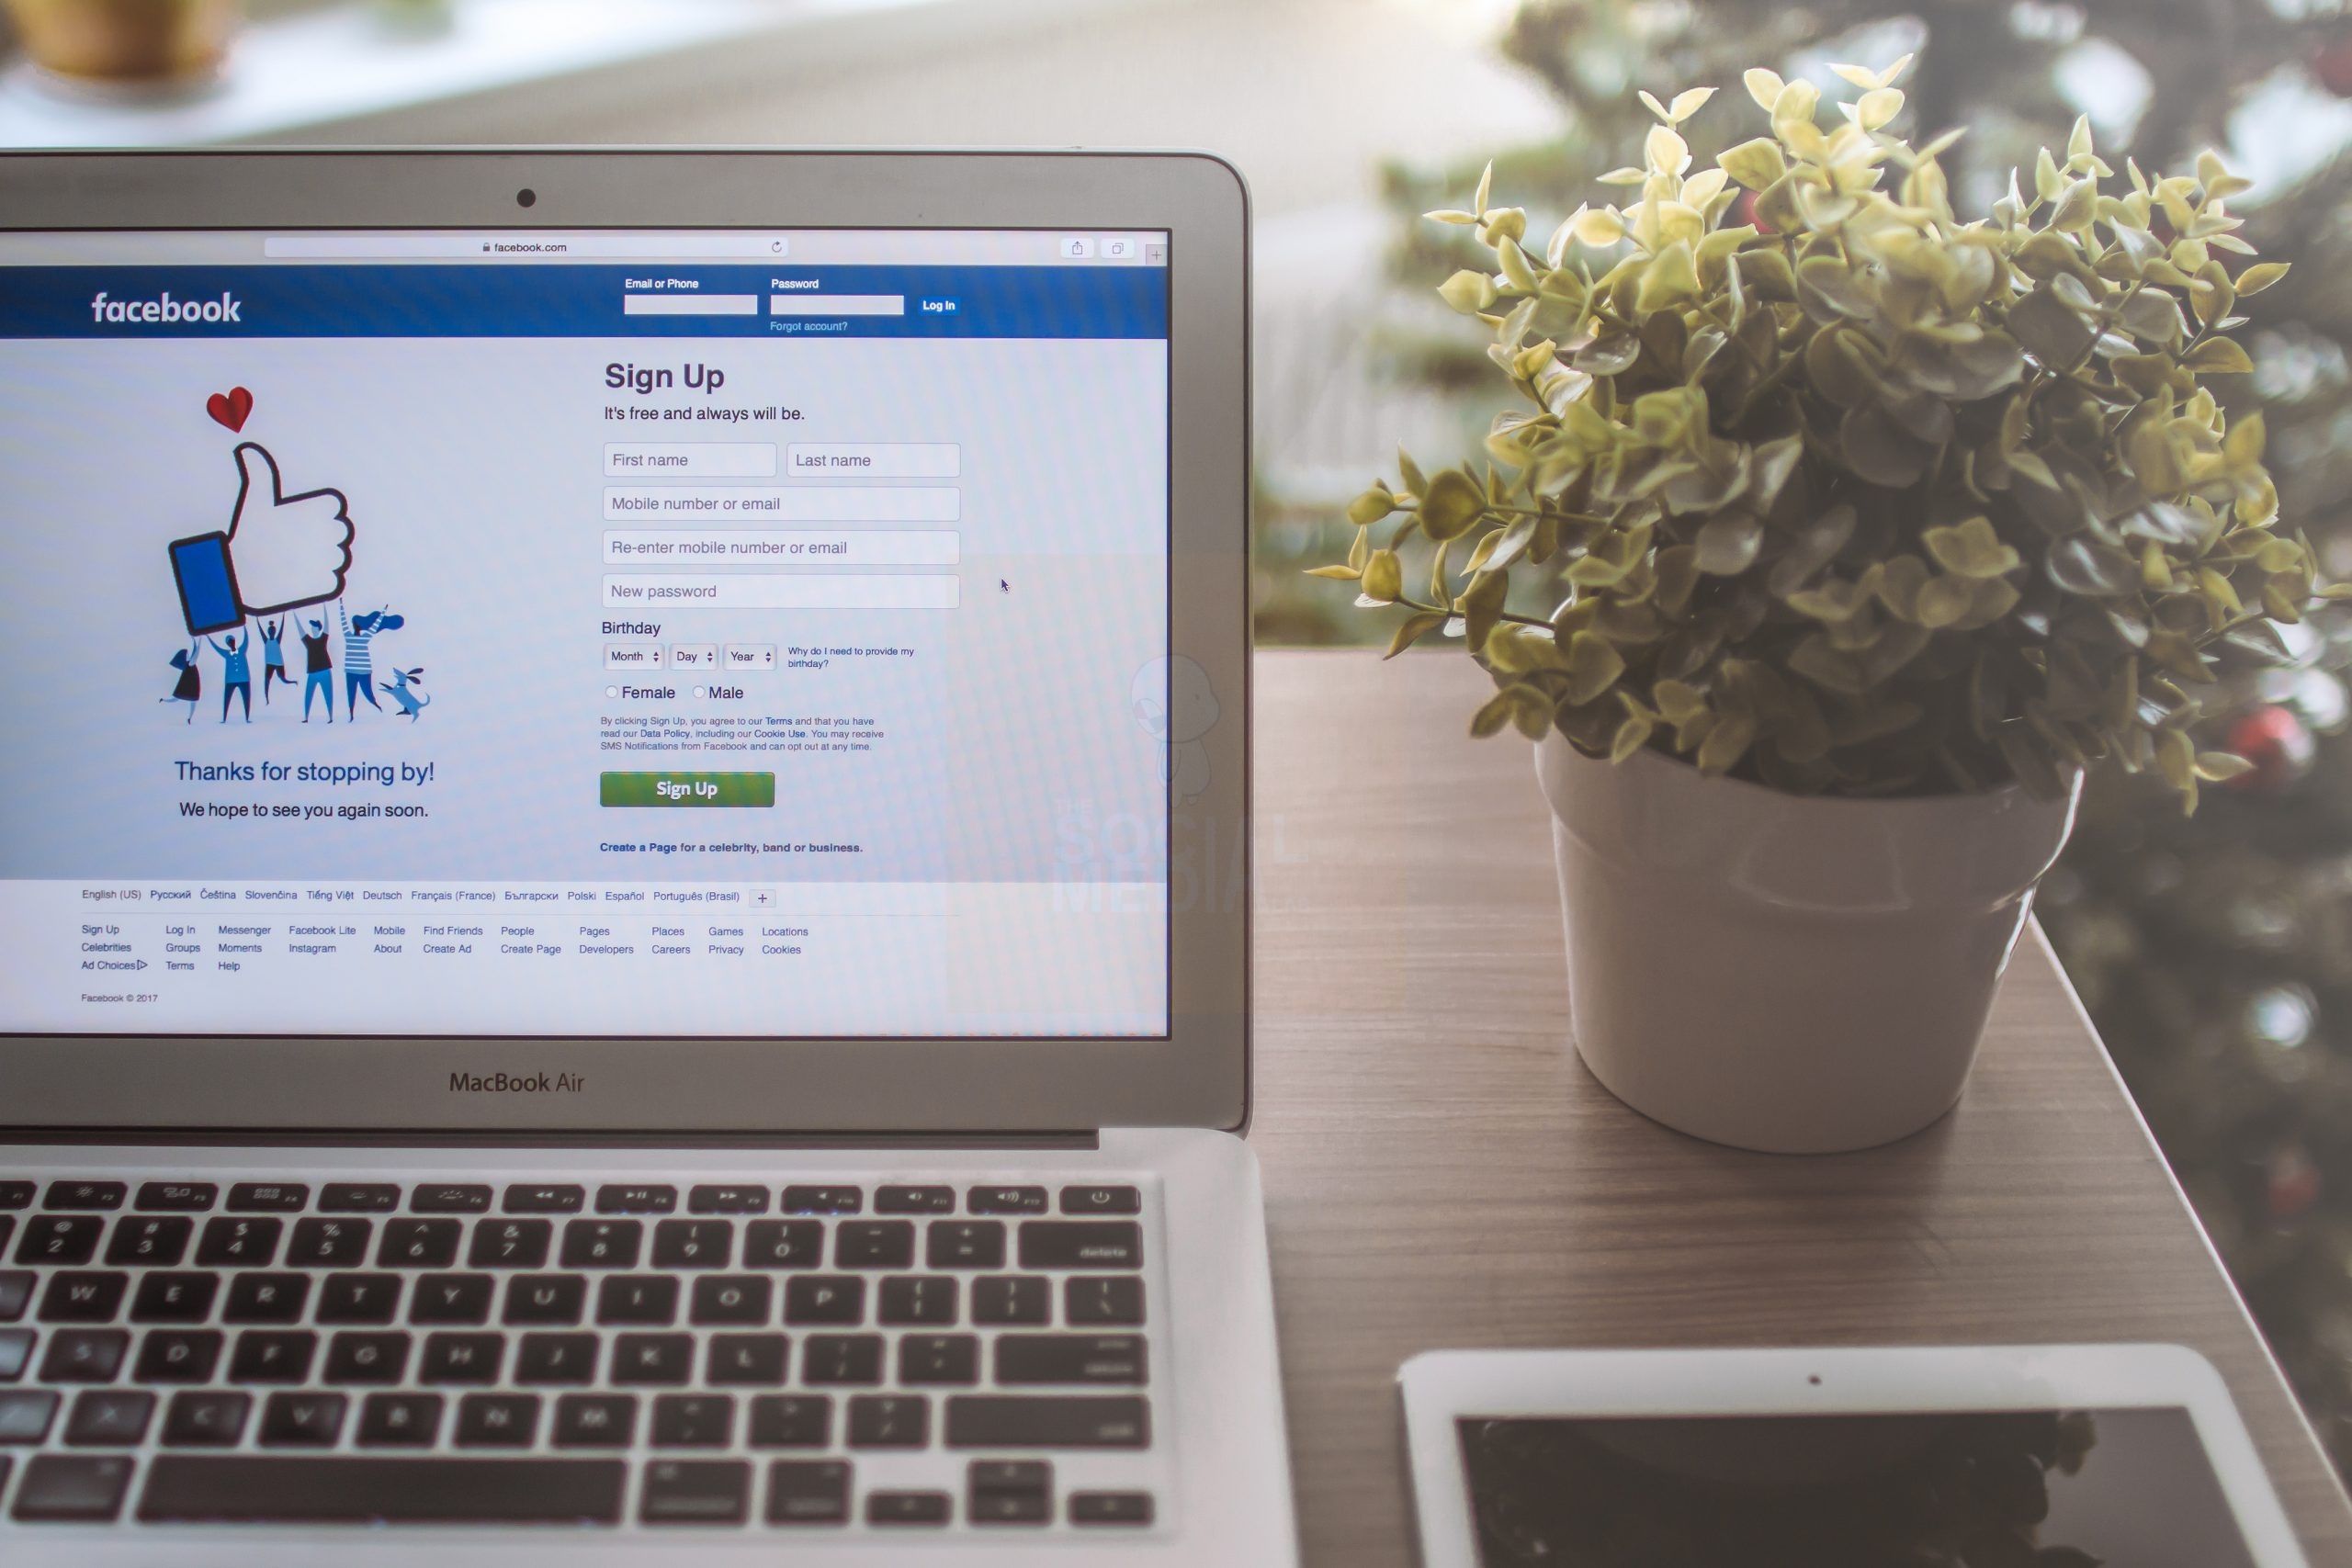 Las ventajas de planificar una campaña de anuncios en Facebook. En este artículo, exploraremos las ventajas de planificar una campaña de anuncios en Facebook y cómo The Social Media Lab puede ayudarte.